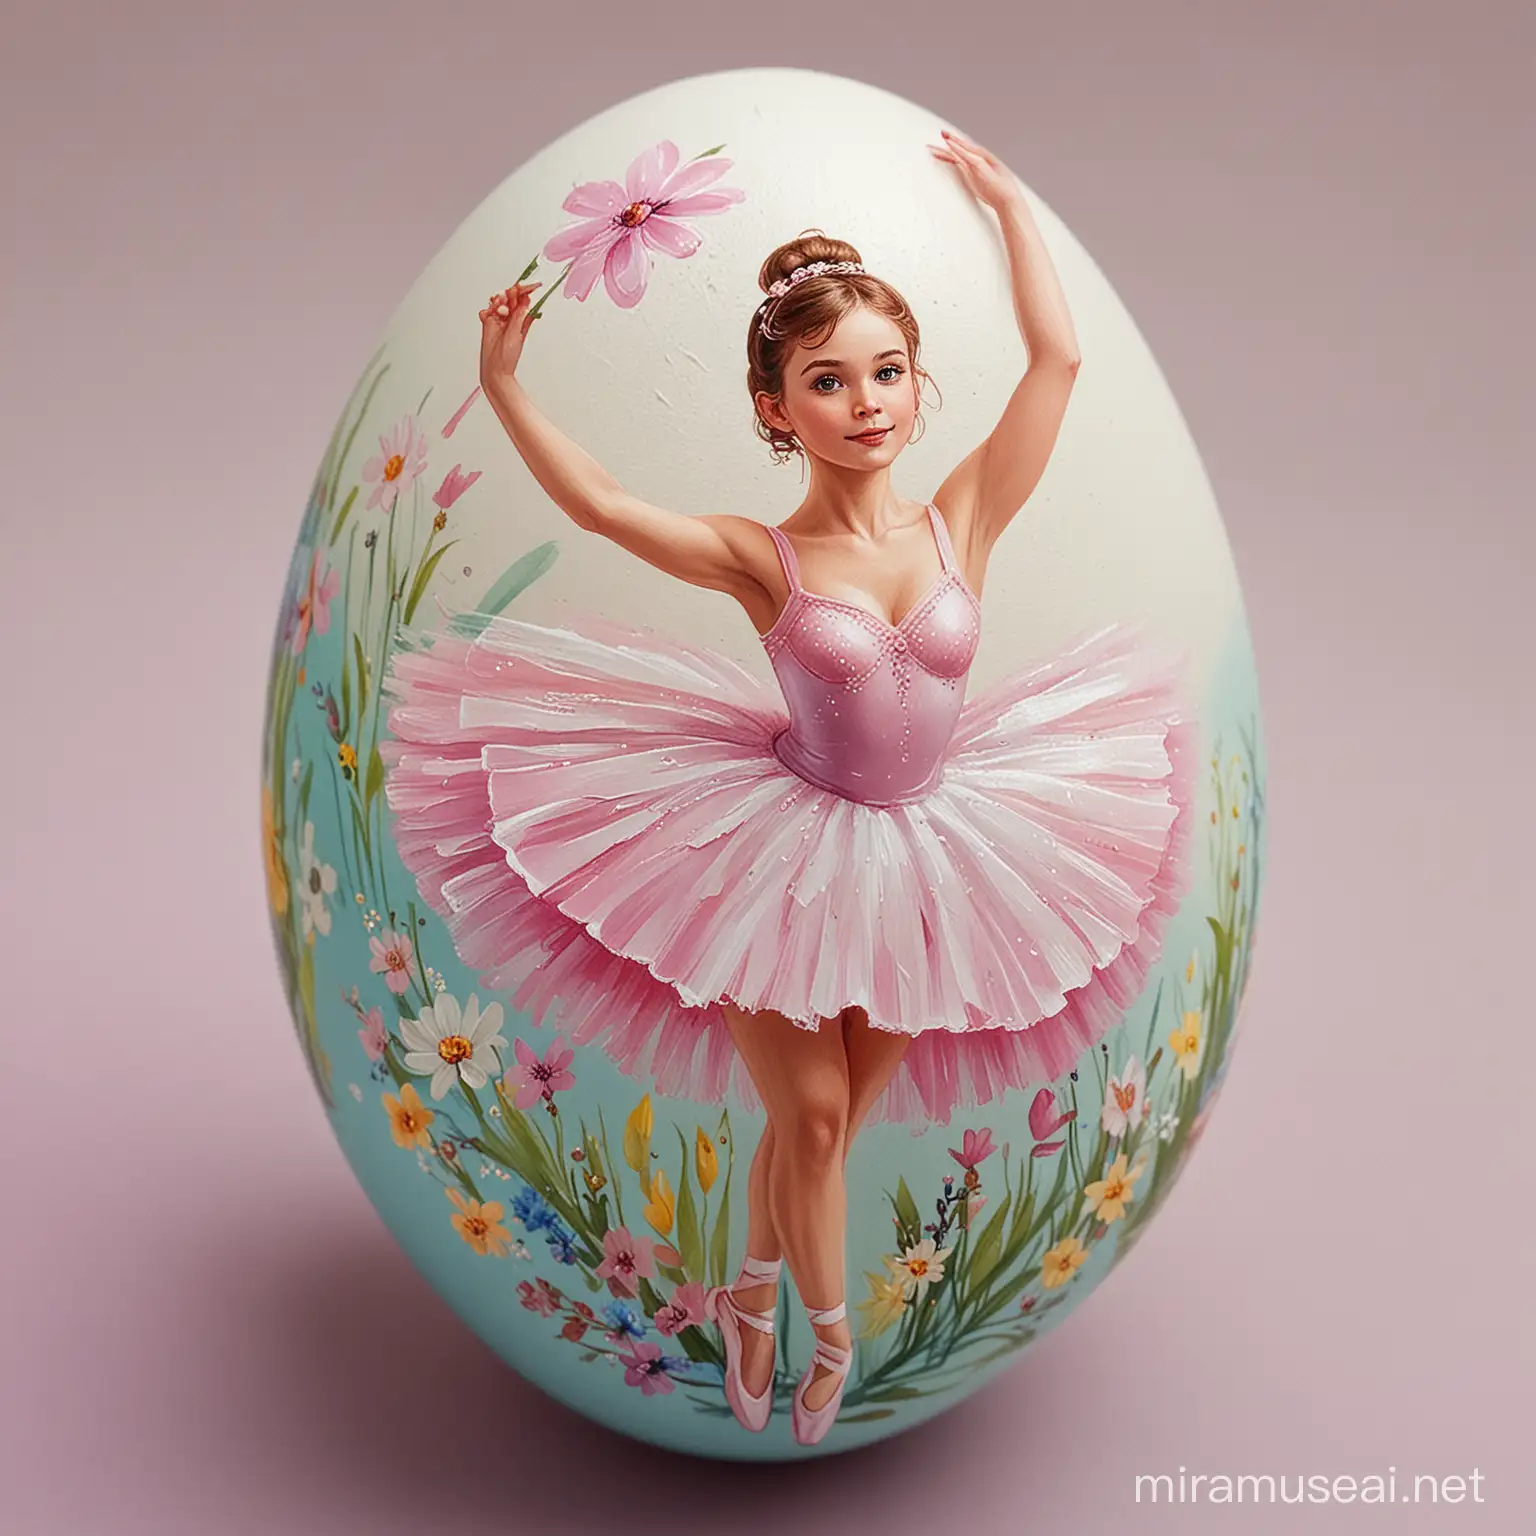 Graceful Ballerina Painted on Easter Egg